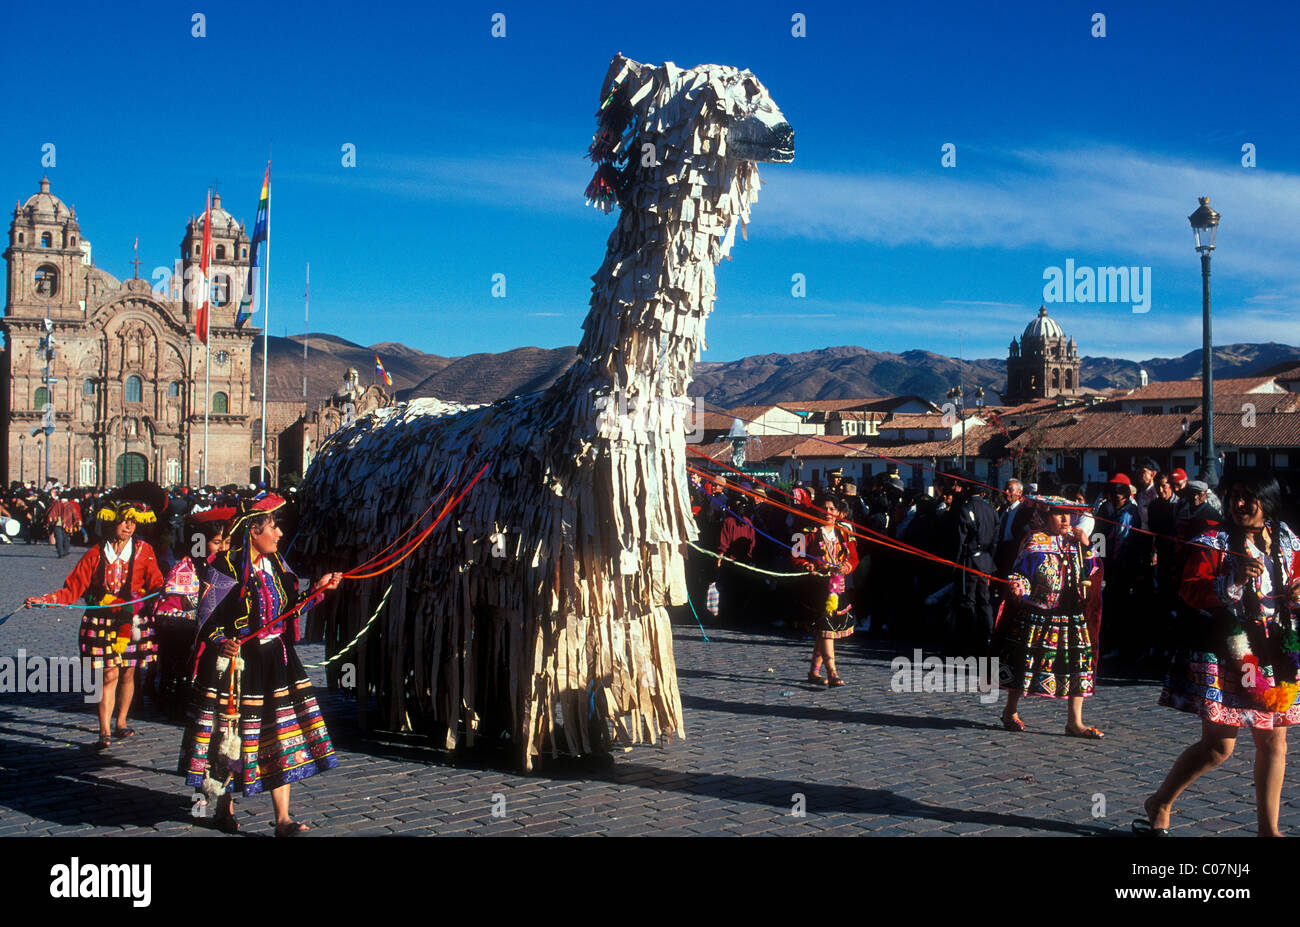 Un grand Lama figure sont transmises sur la Plaza de Armas dans Qusco, défilé de l'Inti Raymi festival Banque D'Images